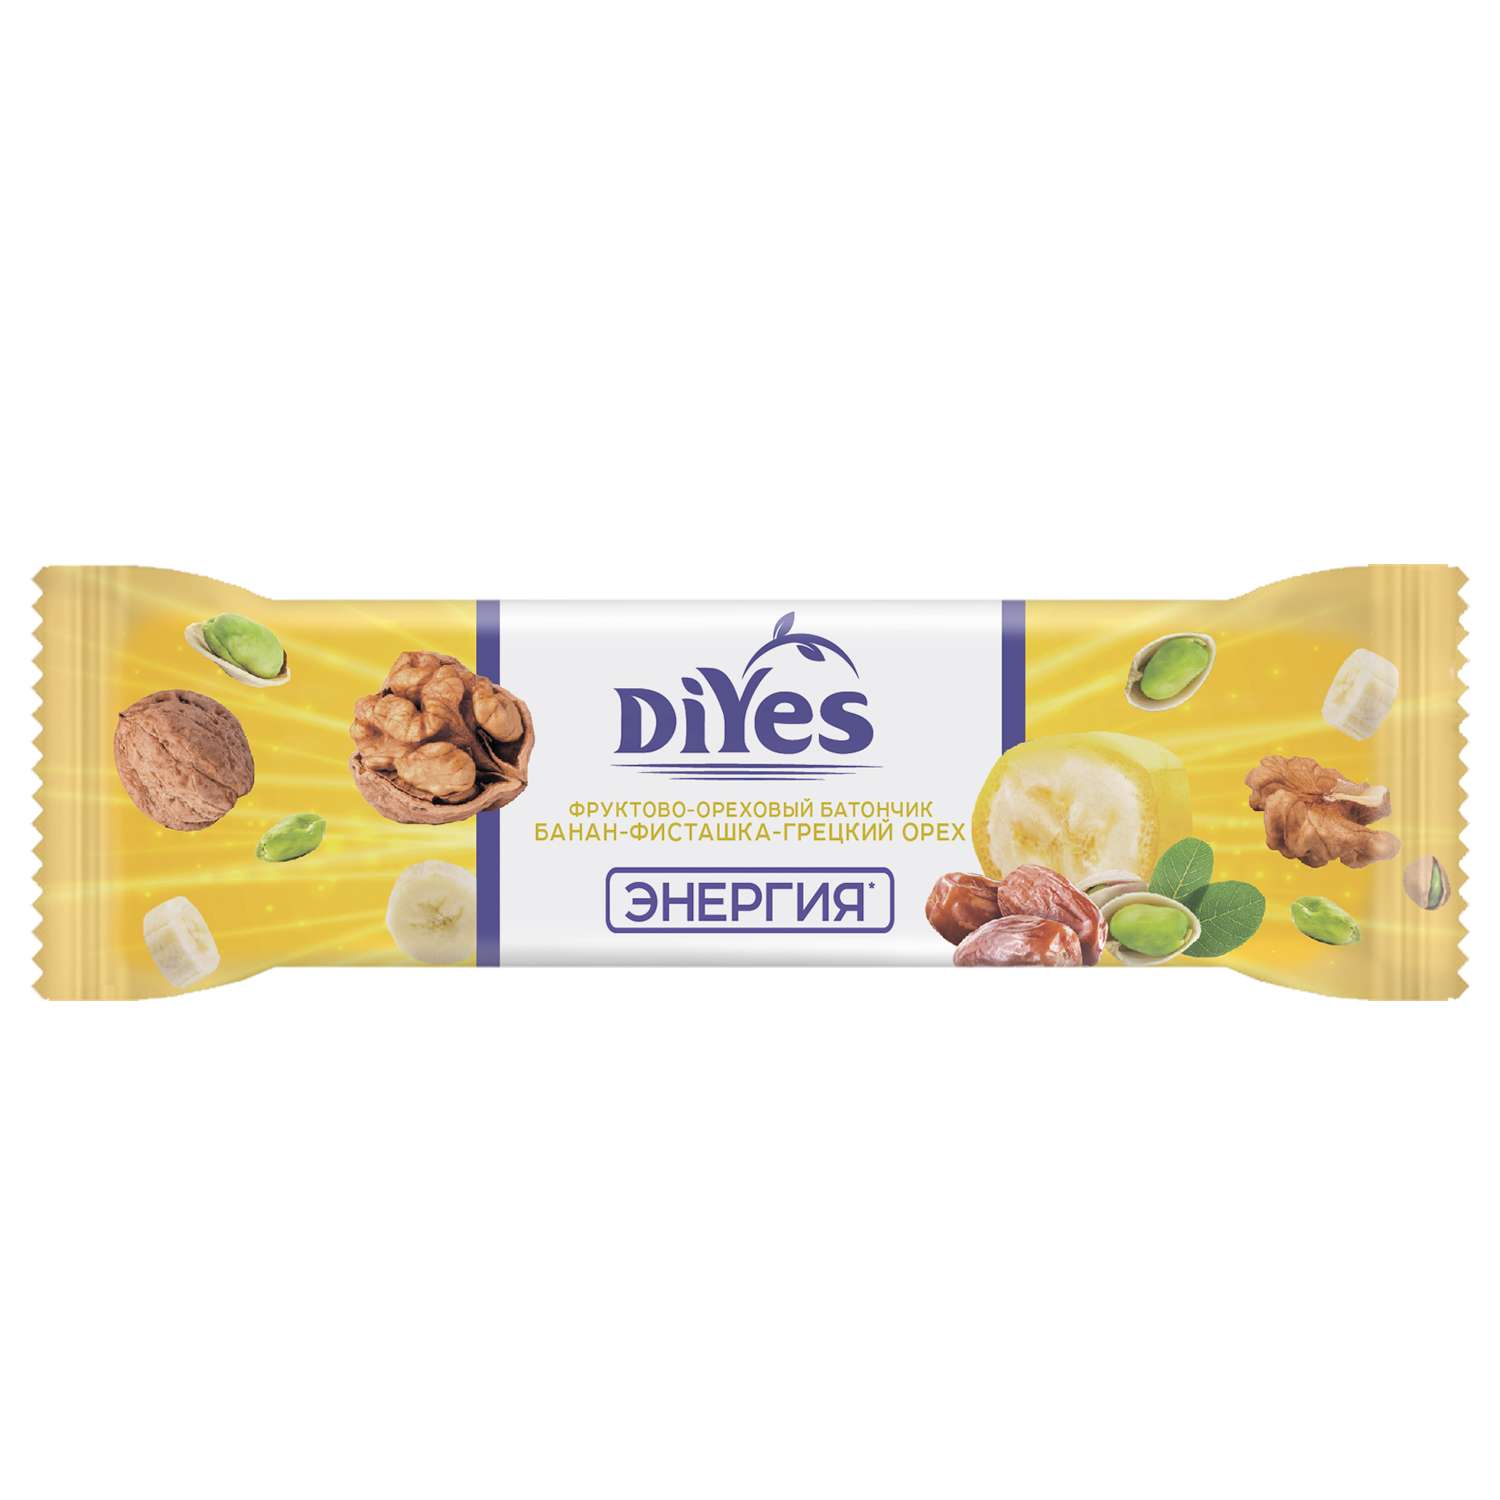 Батончик DiYes банан-фисташки-грецкий орех с молочным шоколадом и витамином В1 40г - фото 1